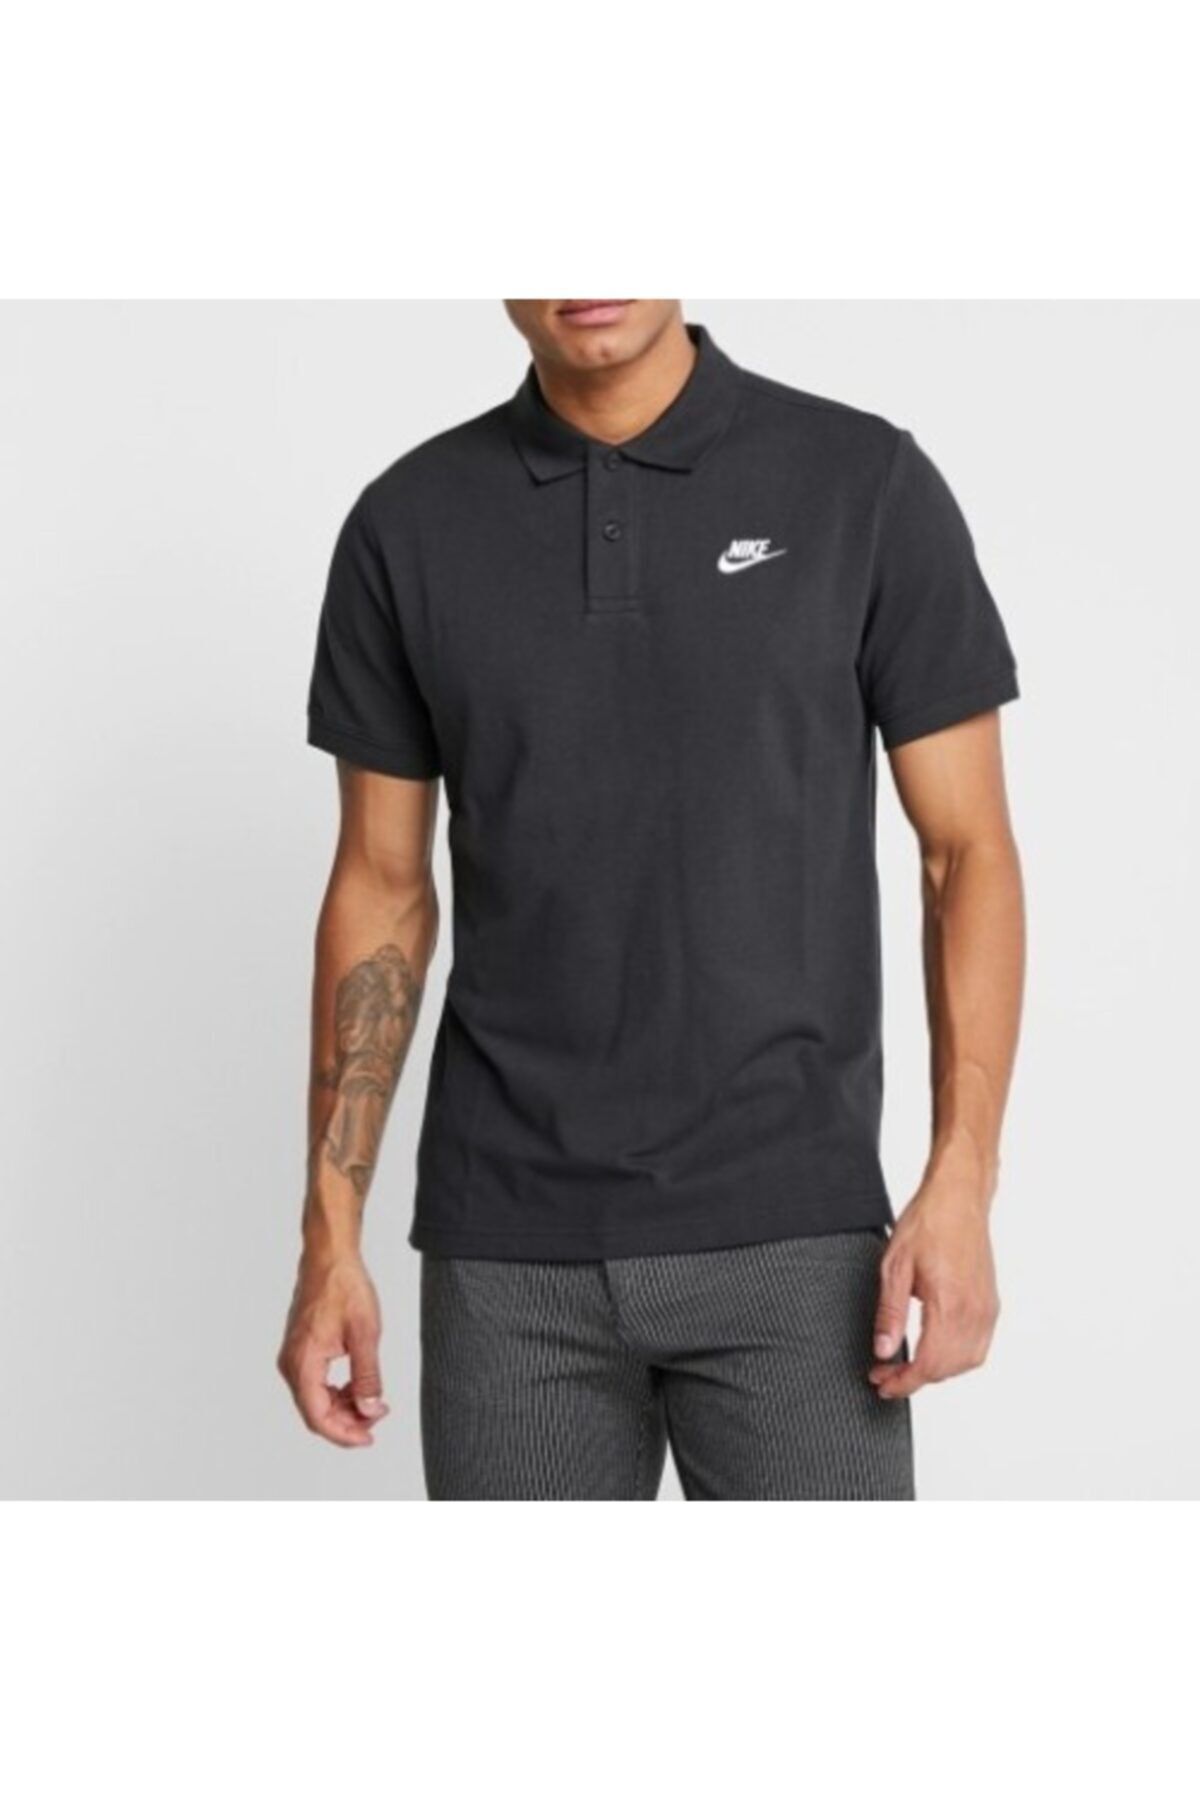 Nike Erkek Siyah Polo T-shirt Cn8764-010